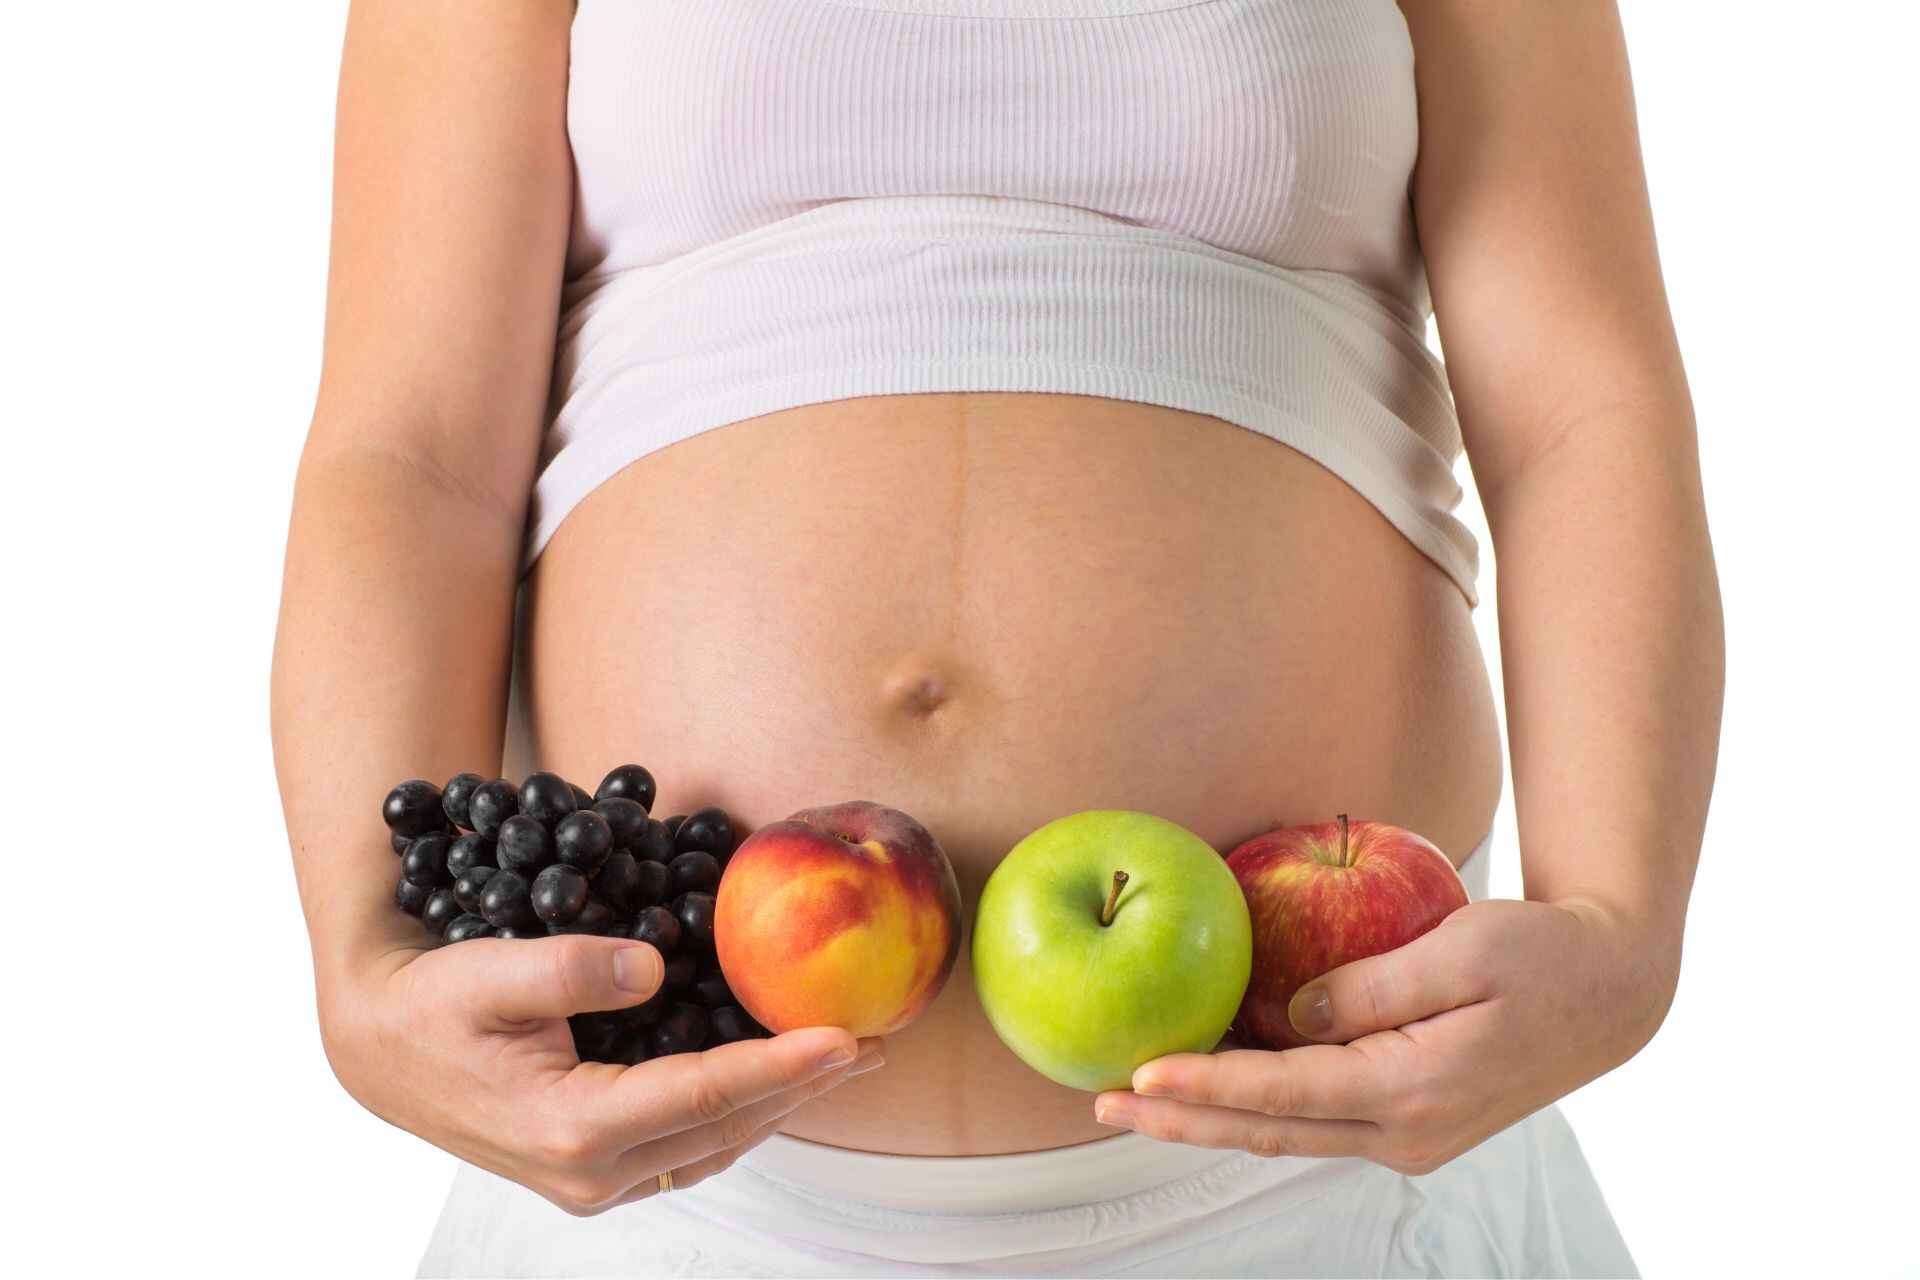 الحمل: التغذية أثناء الحمل مهمة لصحة الأم والجنين